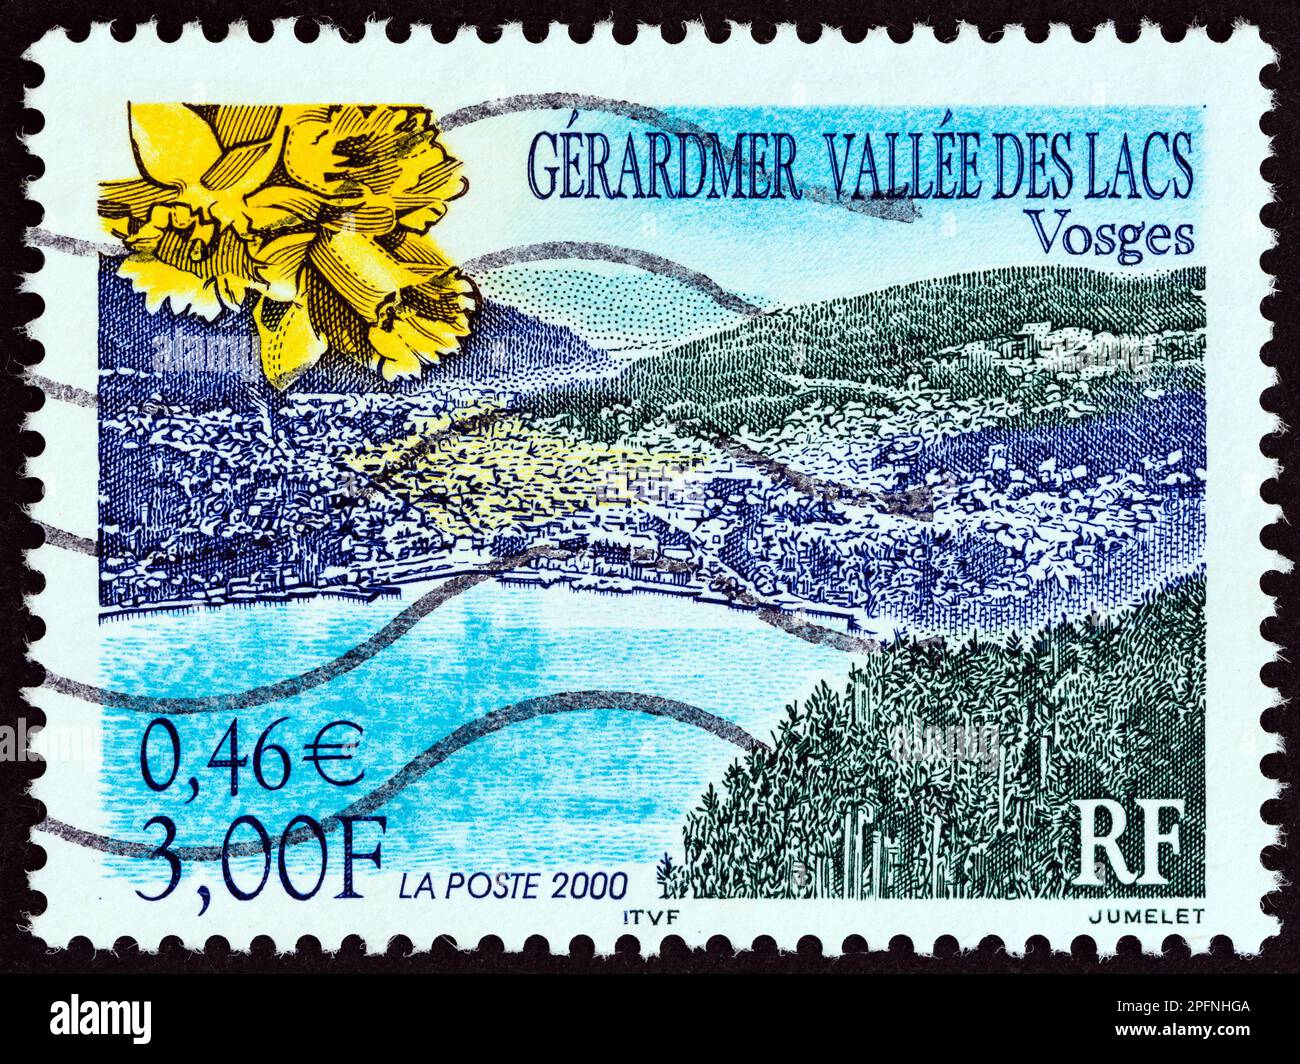 FRANKREICH - CA. 2000: Ein in Frankreich gedruckter Stempel zeigt das Tal der Seen, Gerardmer, ca. 2000. Stockfoto